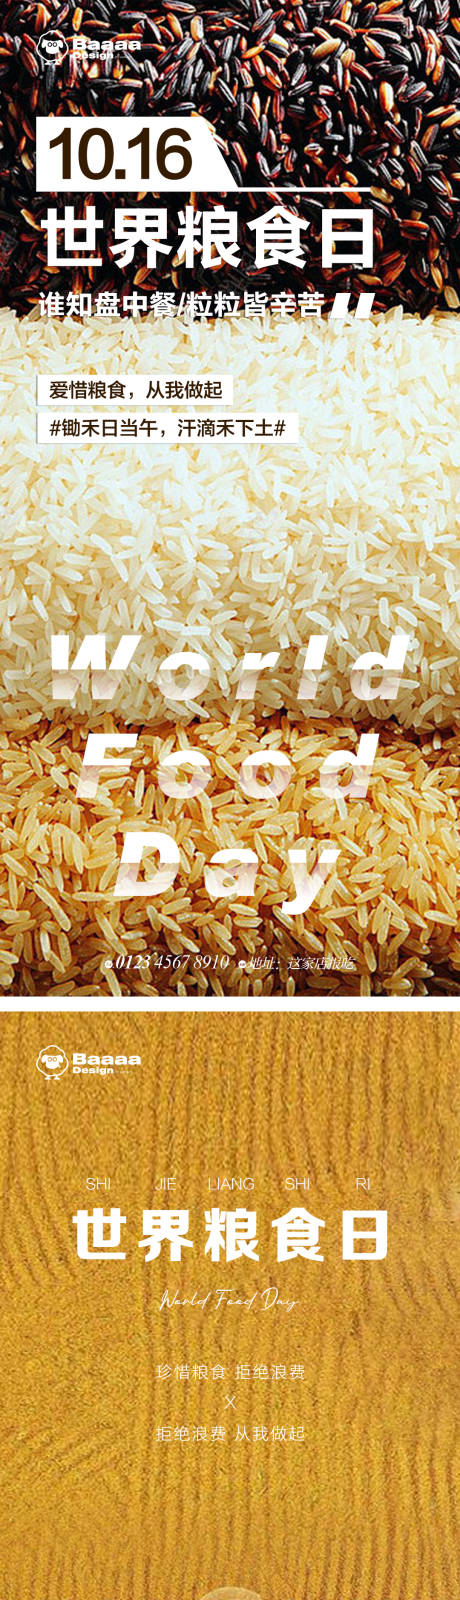 世界粮食日节日单图